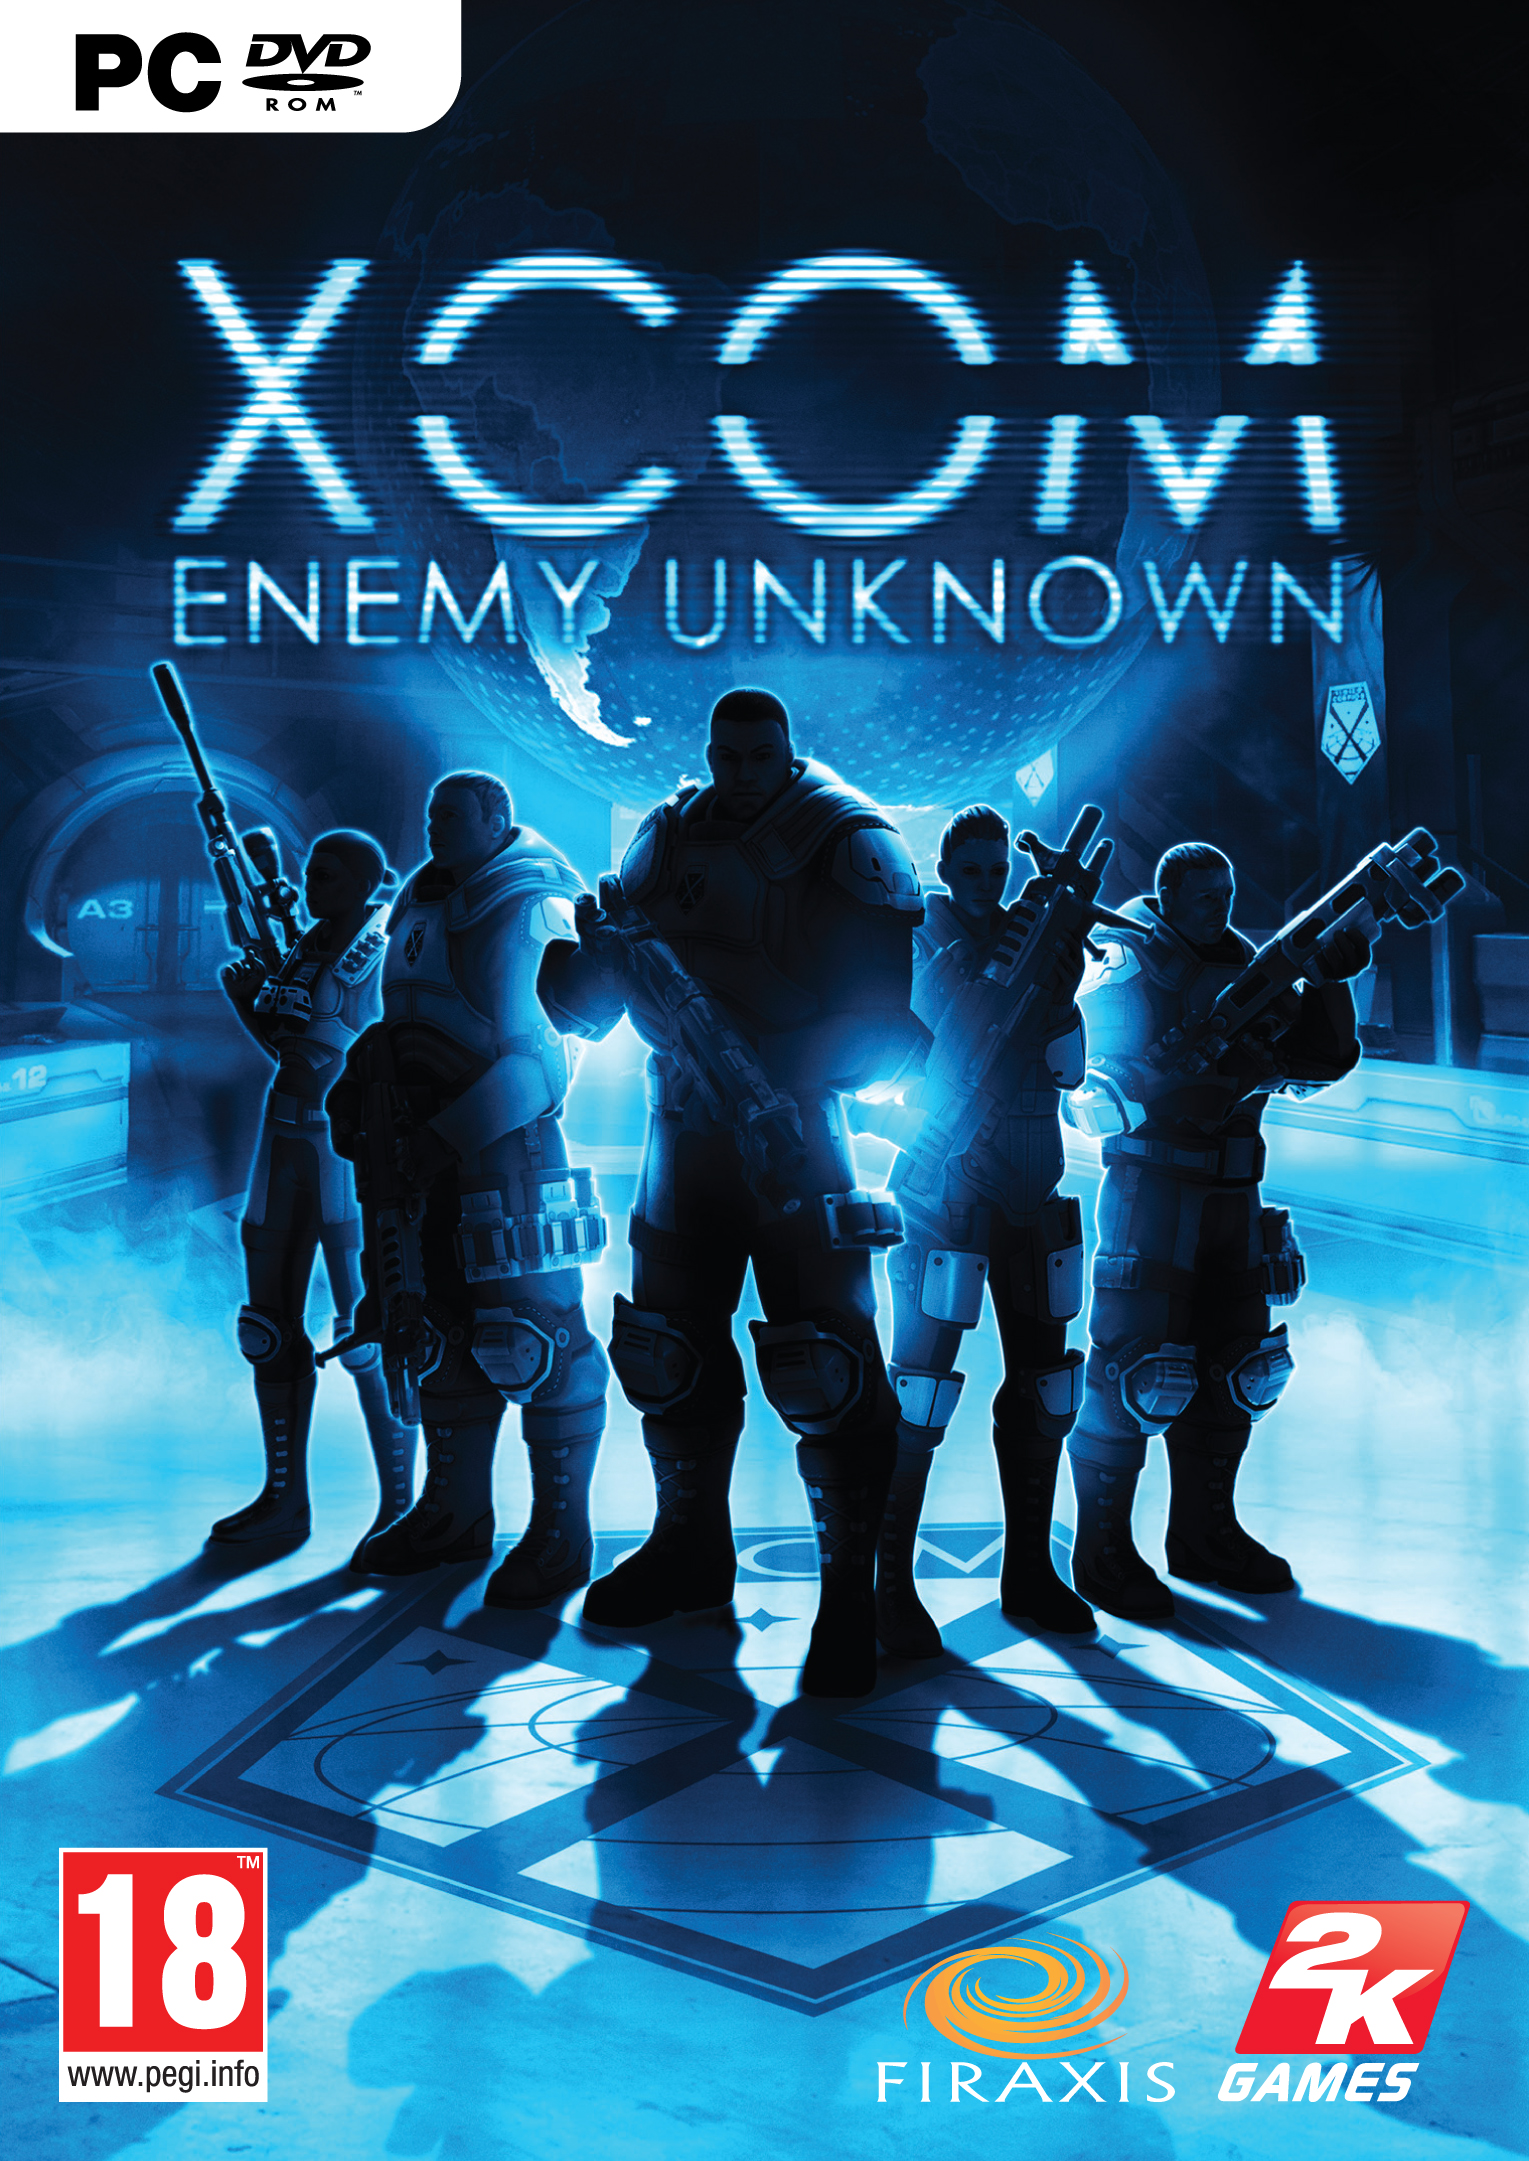 Xcom Enemy Unknown Xcom Wiki Fandom